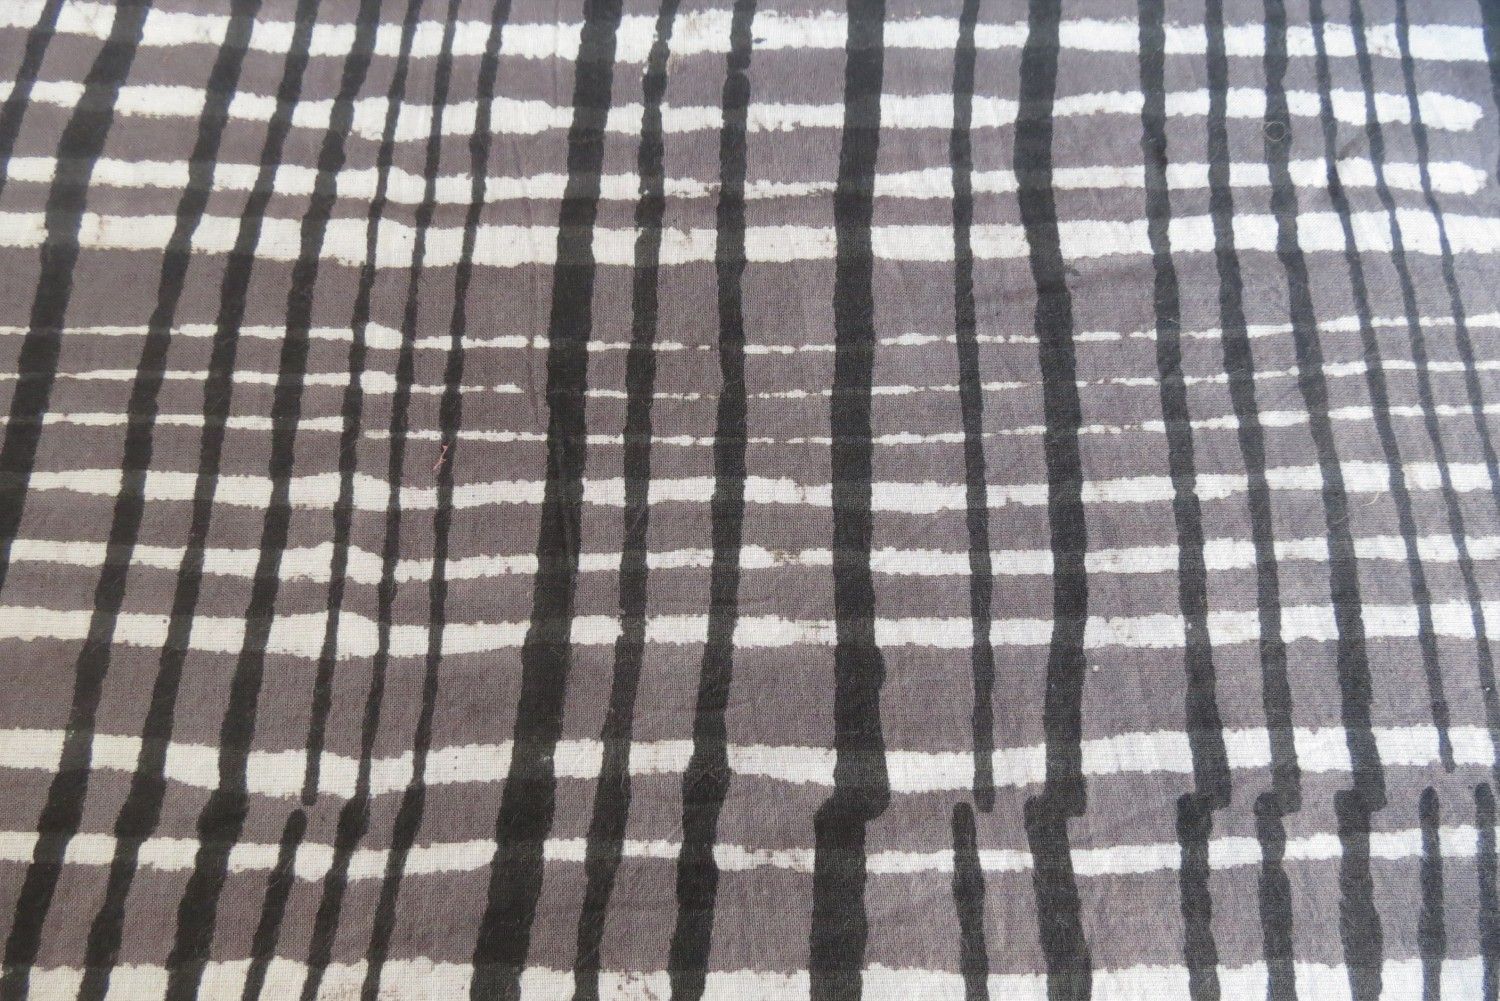 Tricolor Checks Block Print Fabric